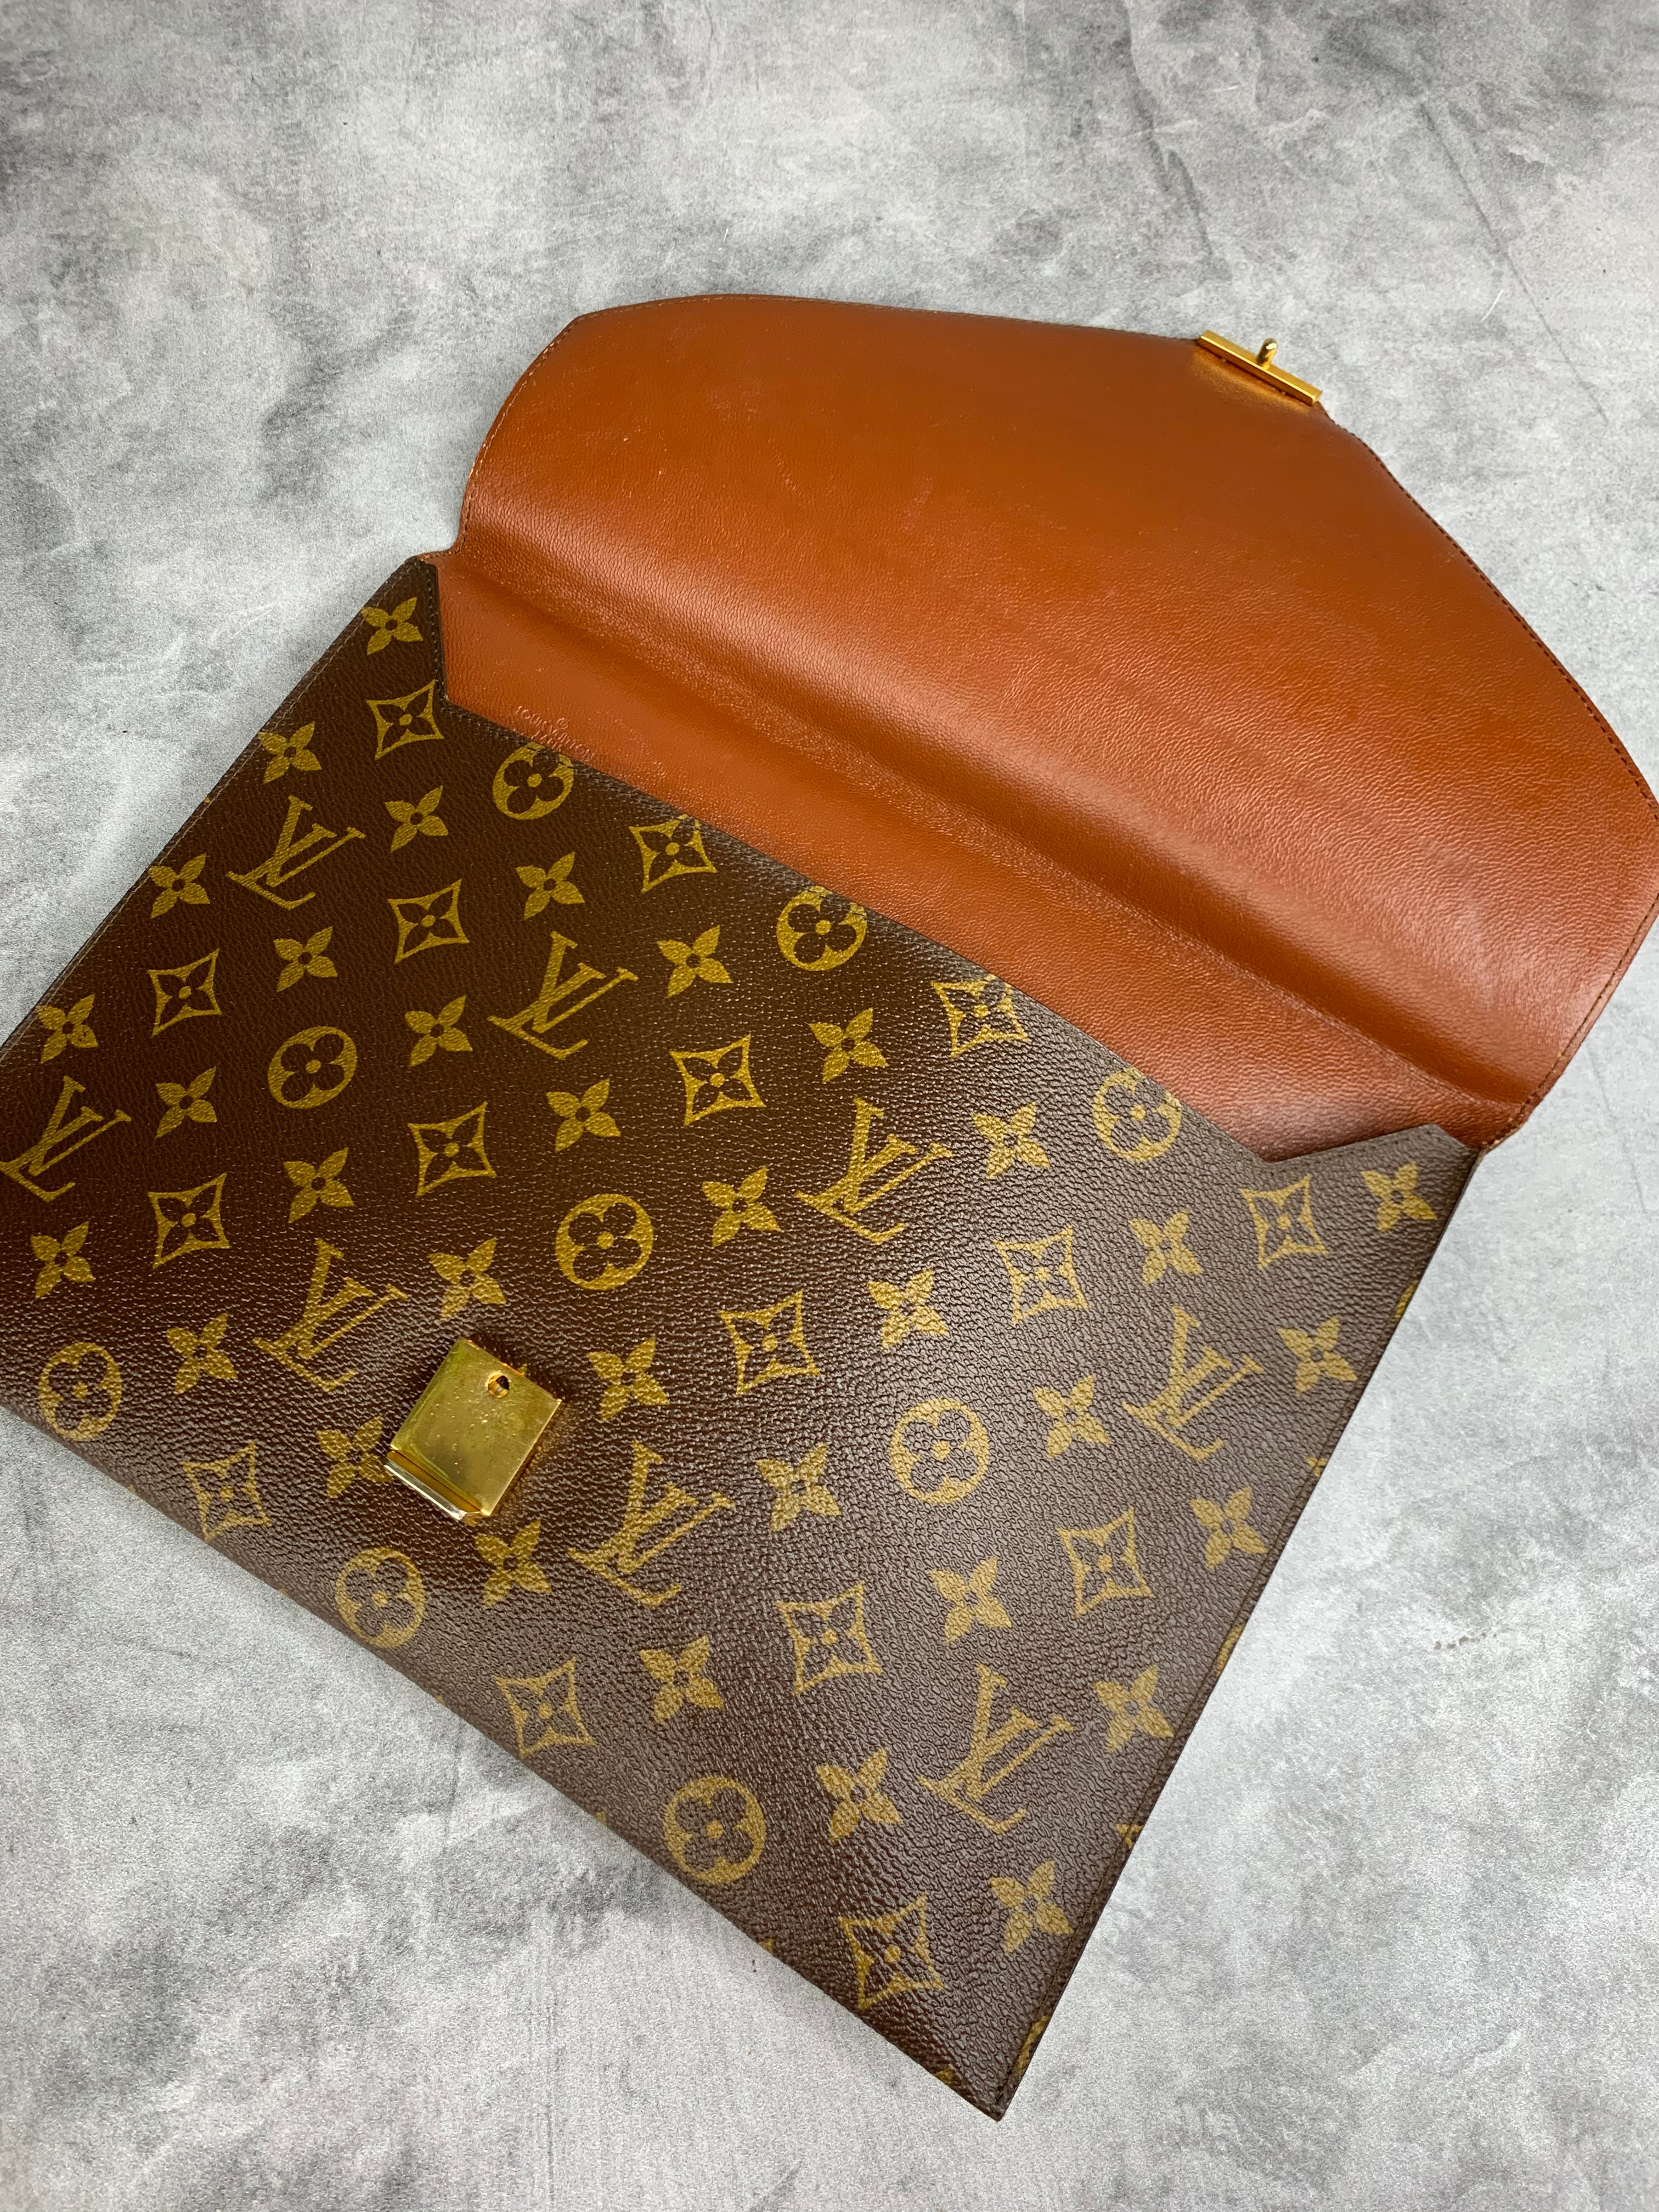 Authentic Louis Vuitton Monogram XL Envelope Clutch – Classic Coco